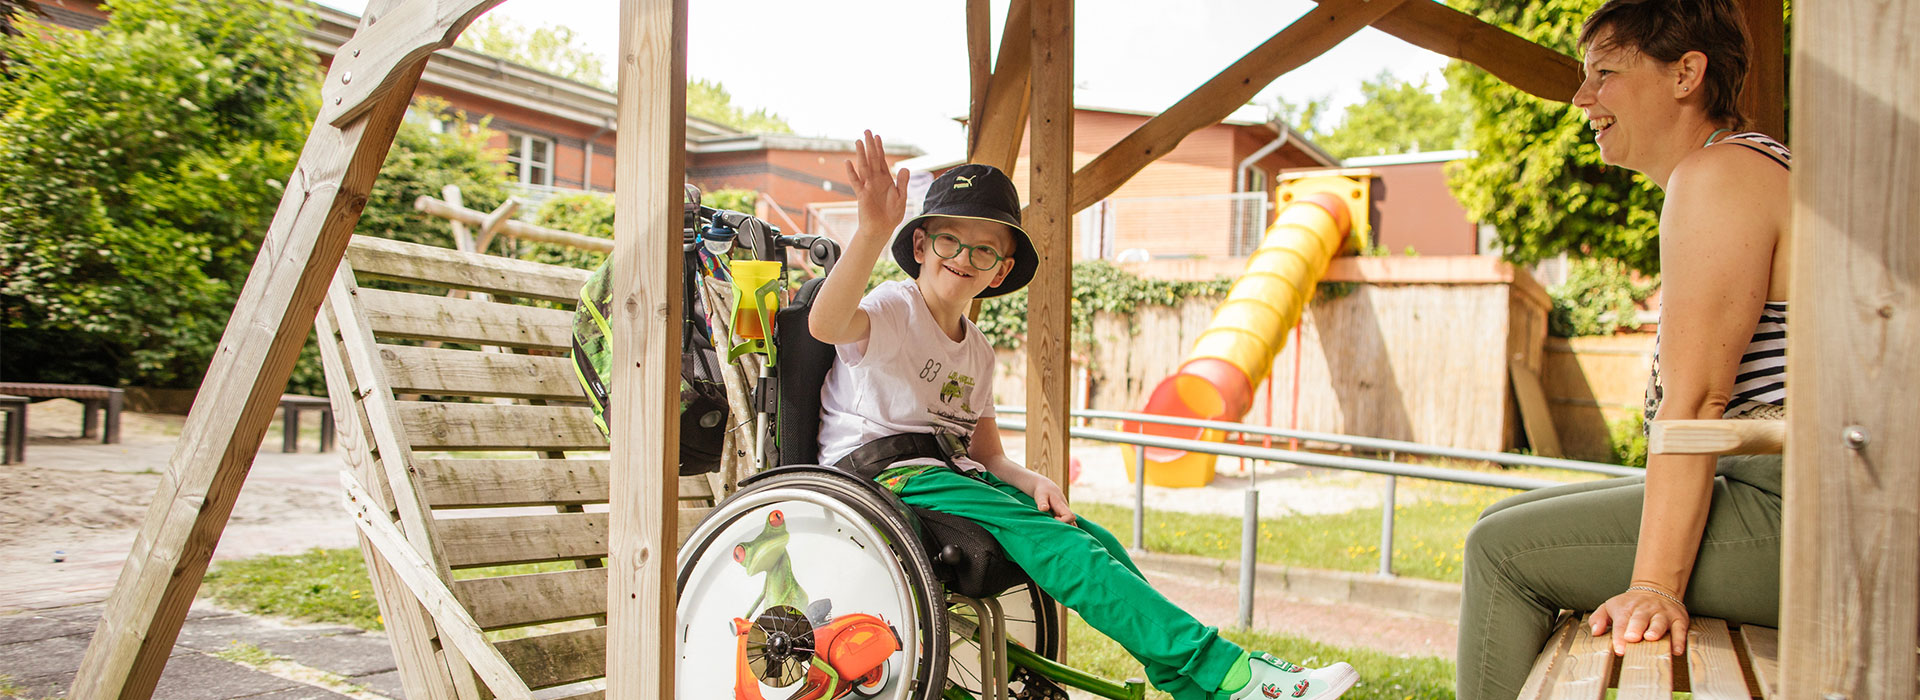 Junge mit Hut im Rollstuhl winkt